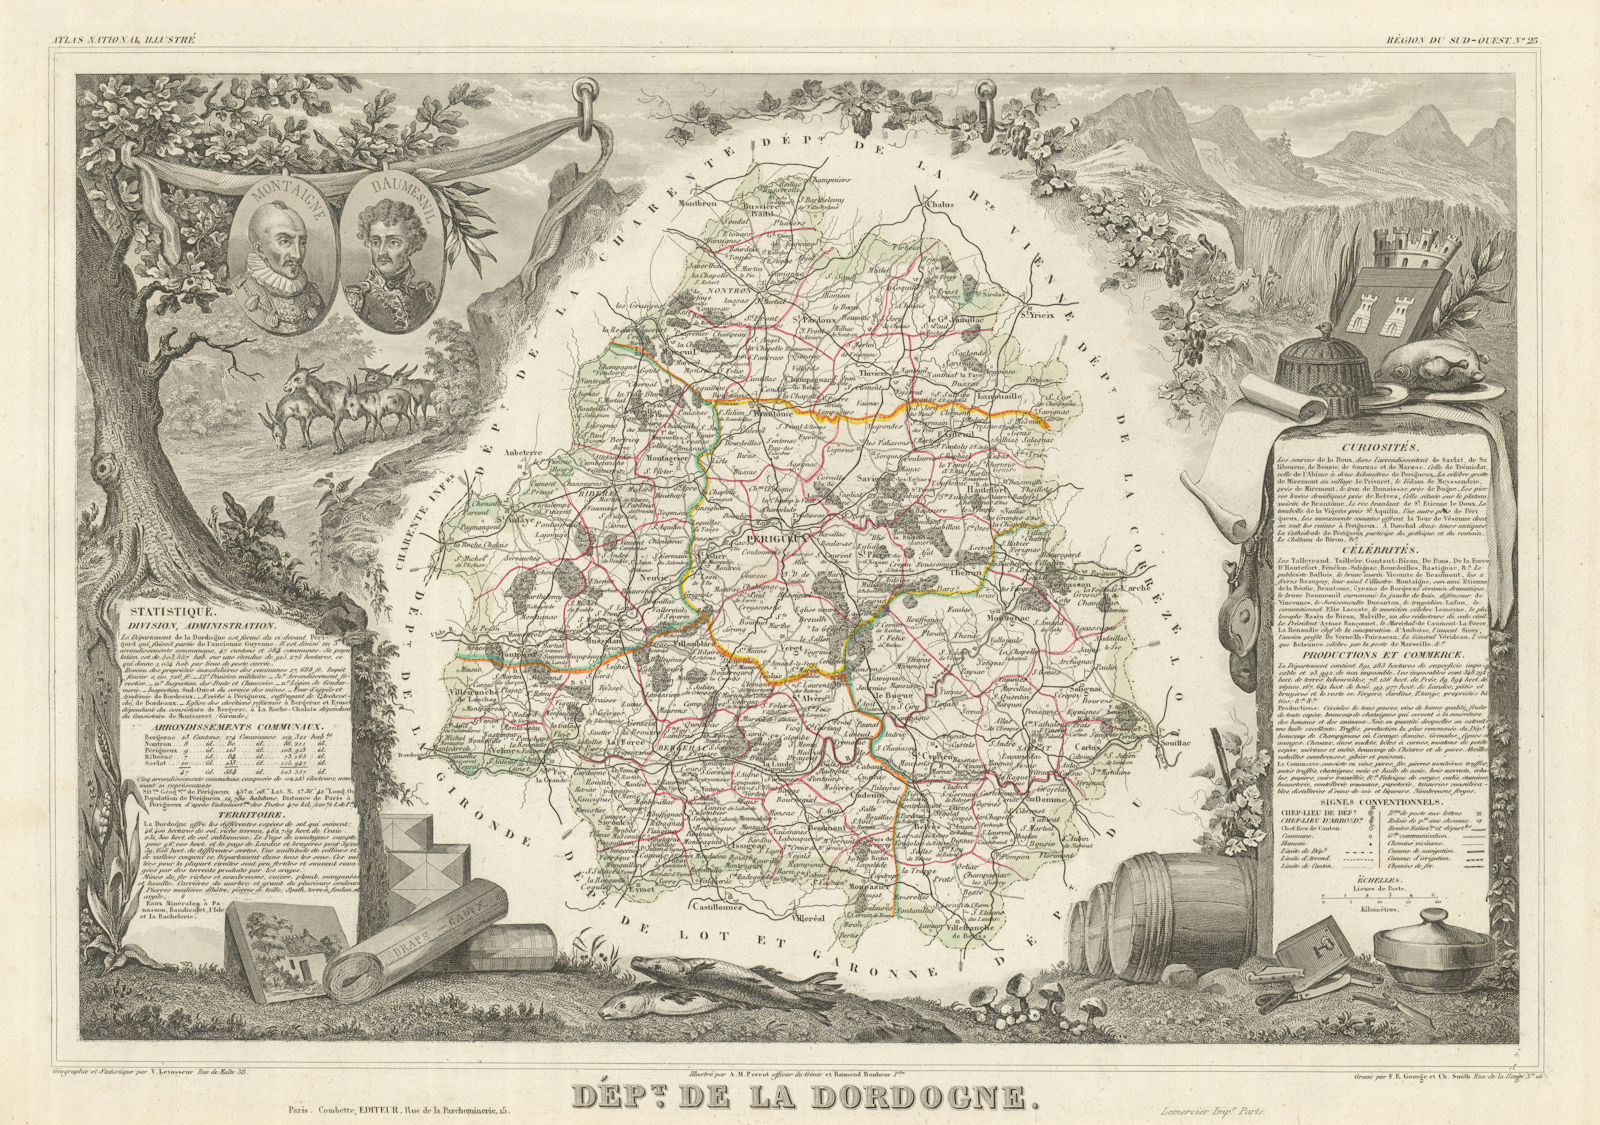 Associate Product Département de la DORDOGNE. Decorative antique map/carte. LEVASSEUR 1856